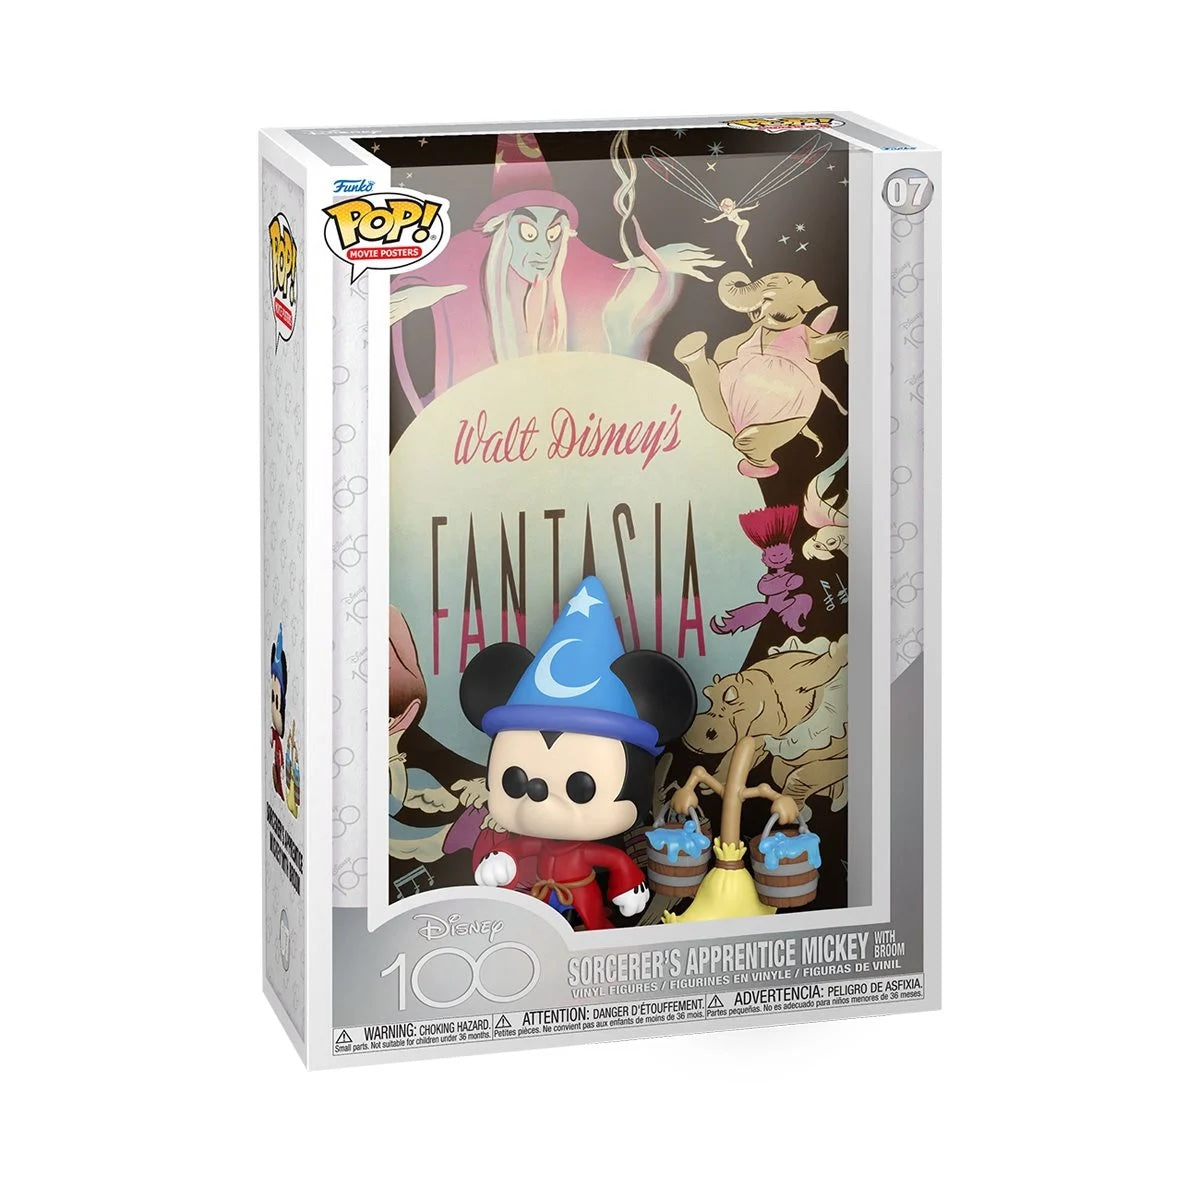 Funko Pop! Movie Poster: Disney 100 - Fantasia Sorcerer's Apprentice Mickey with Broom